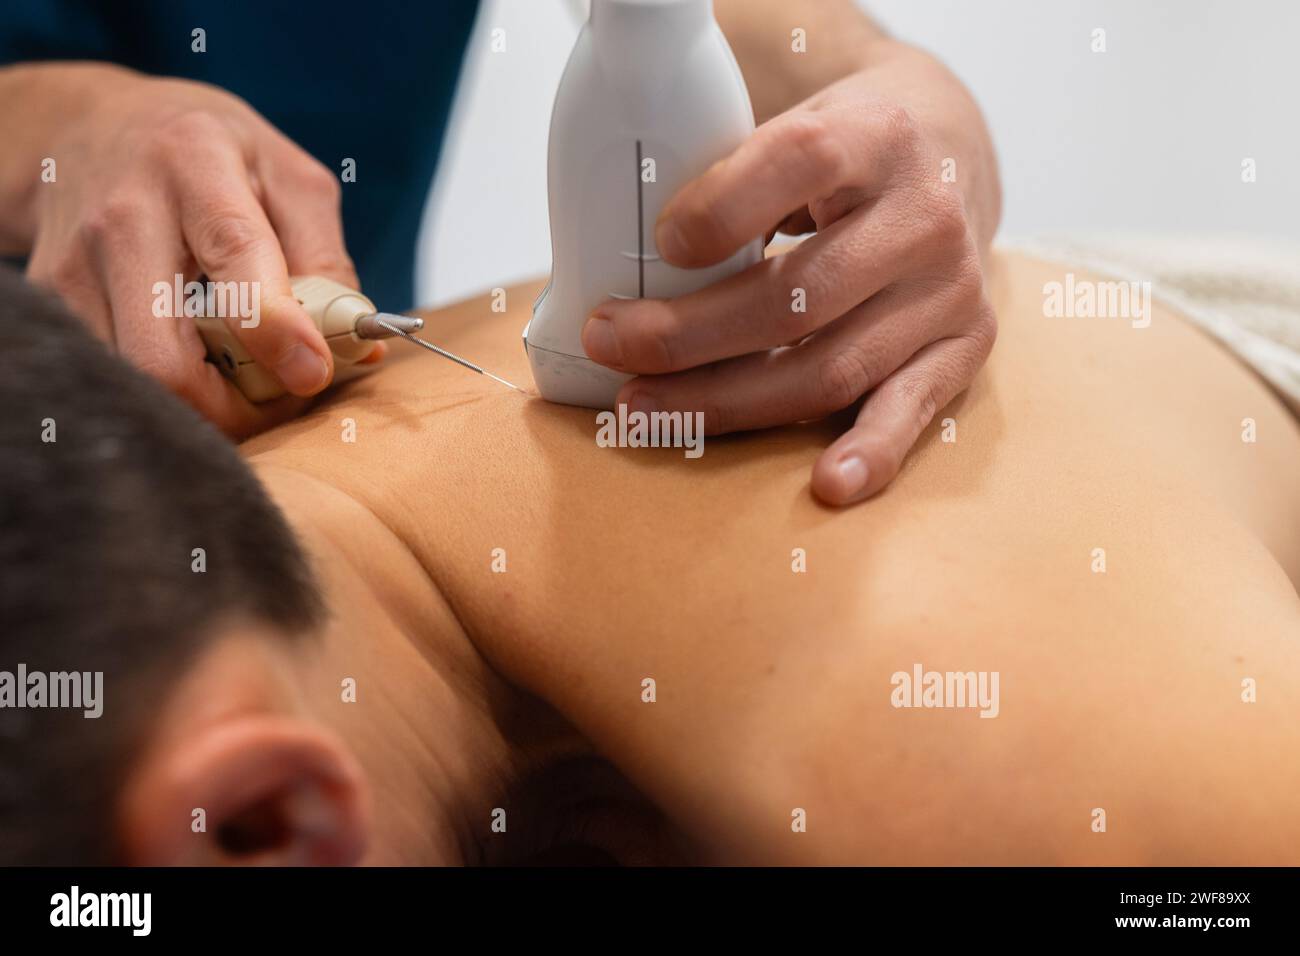 Immagine ravvicinata che mostra un operatore sanitario che esegue un'ecografia sulla schiena del paziente con un trasduttore e un gel Foto Stock